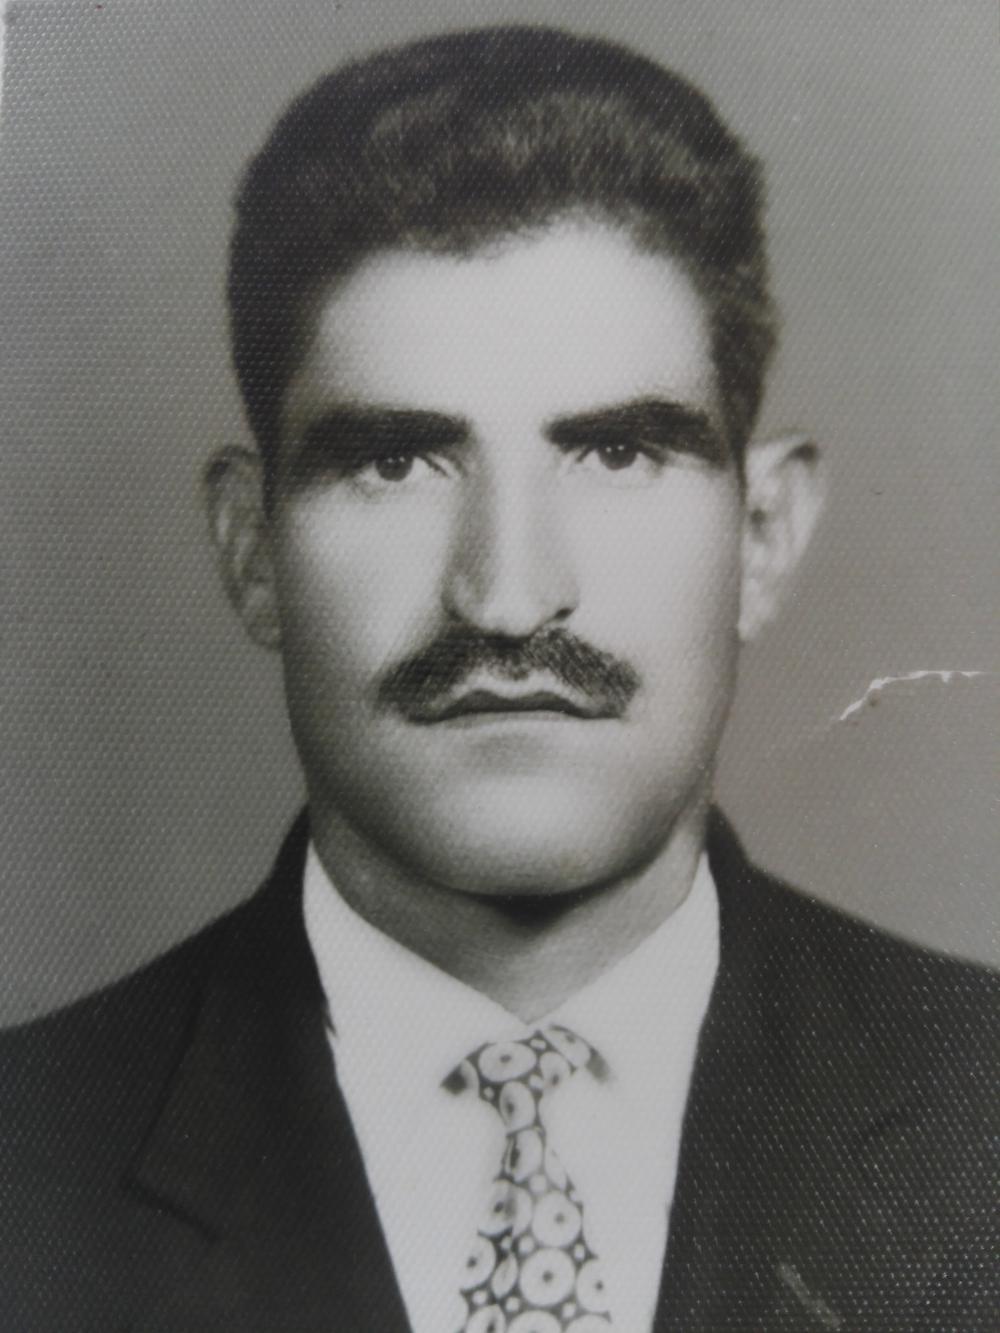 یادبود شادروان حاج عبدالله بهرامی